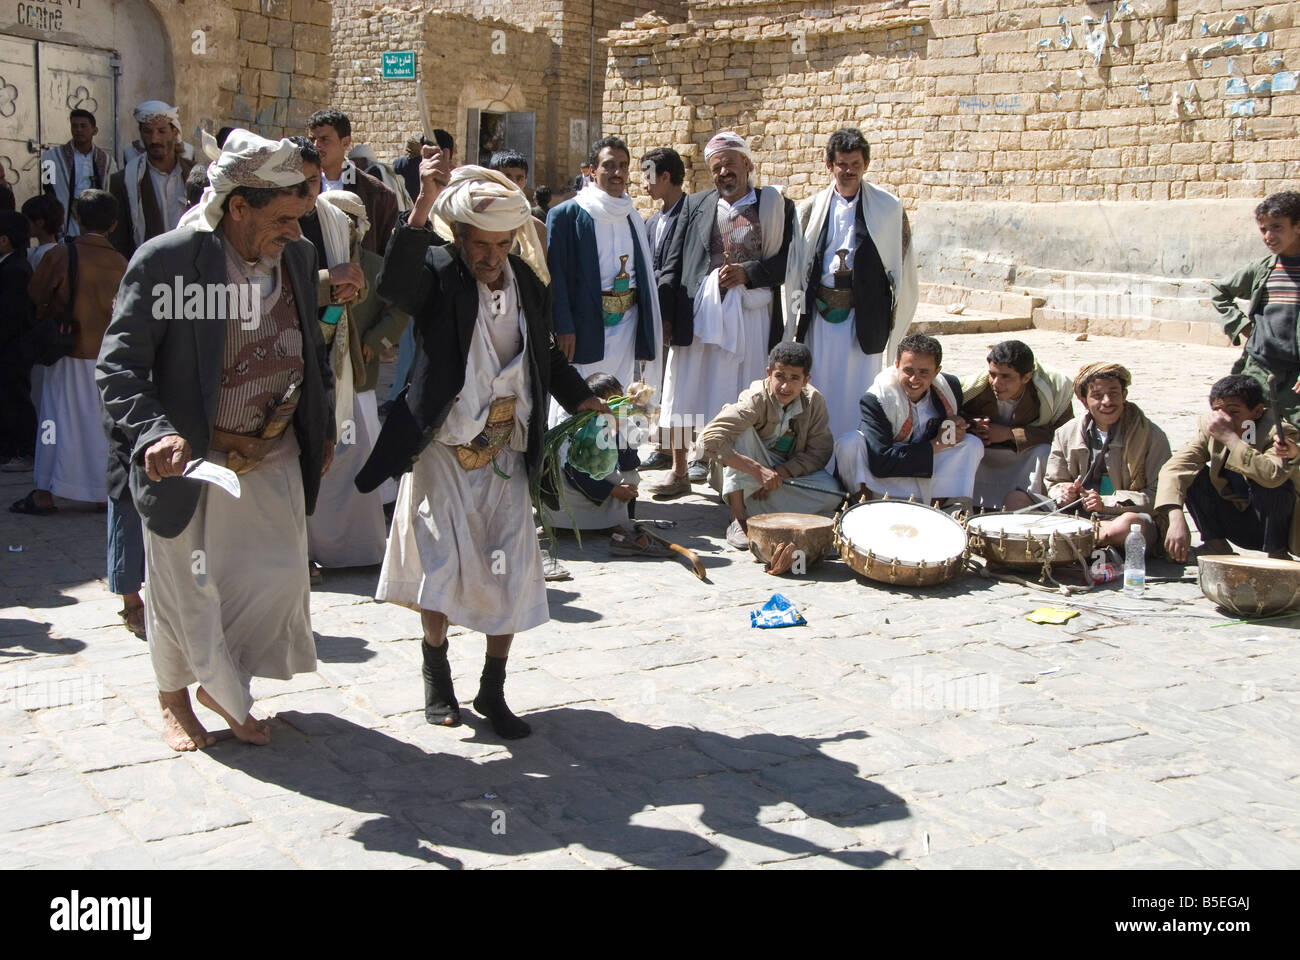 La danse traditionnelle par les hommes à la cérémonie du mariage dans la région de village square Thulla près de San un Yémen Moyen-orient Banque D'Images